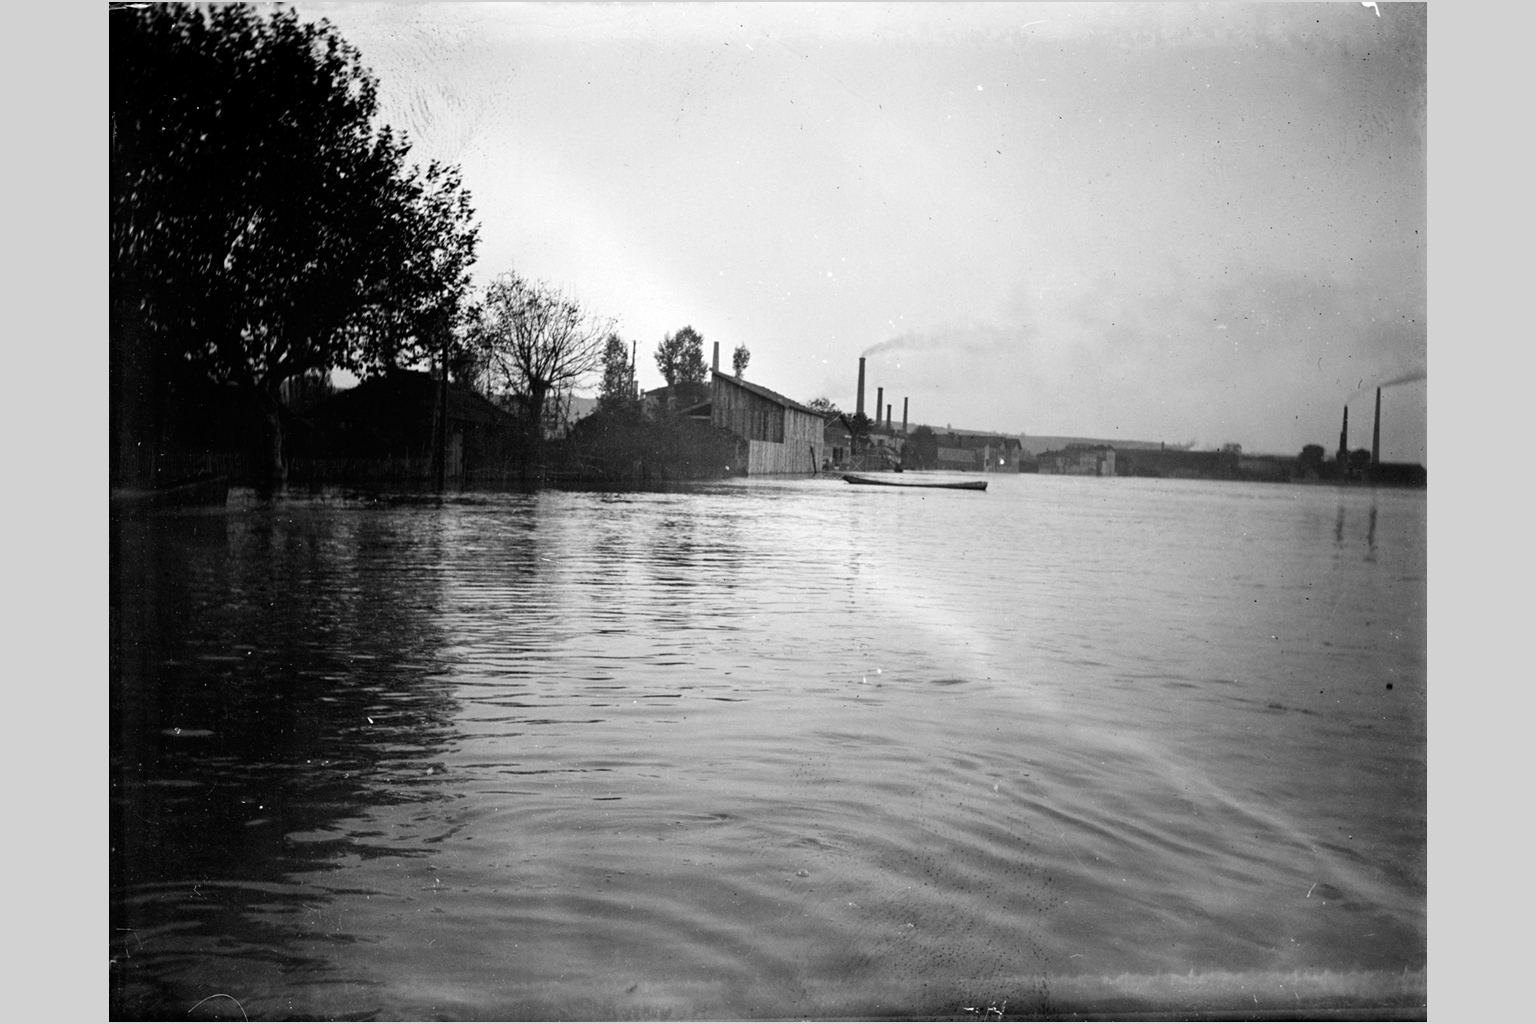 Crue de la Saône à Lyon en 1899, site industriel non identifié : photo négative NB sur plaque de verre (1900, cote : 10PH/58)